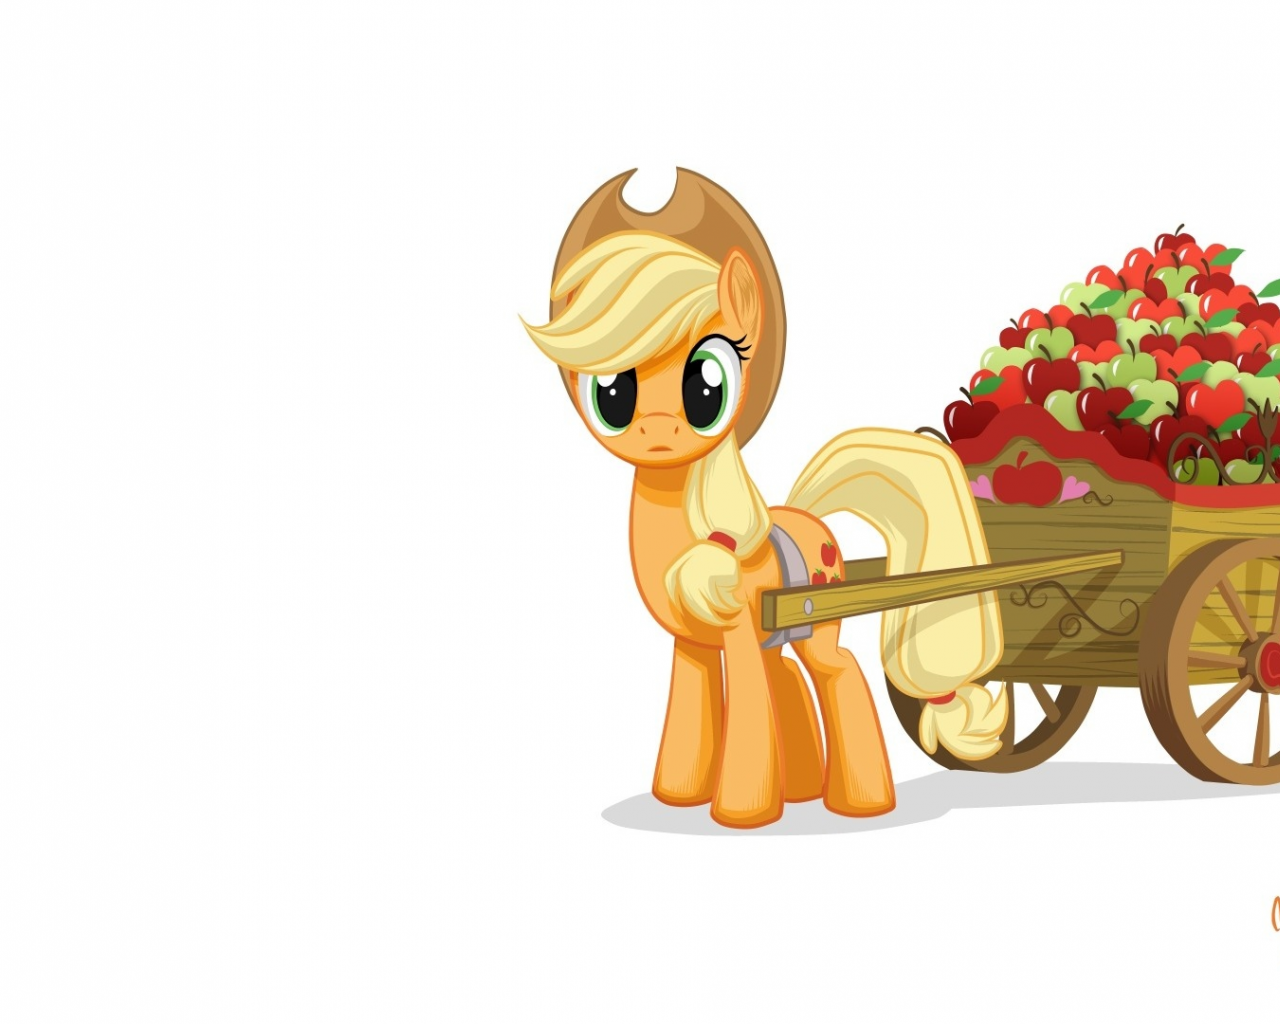 mysticalpha, повозка, my little pony, applejack, пони, яблоки